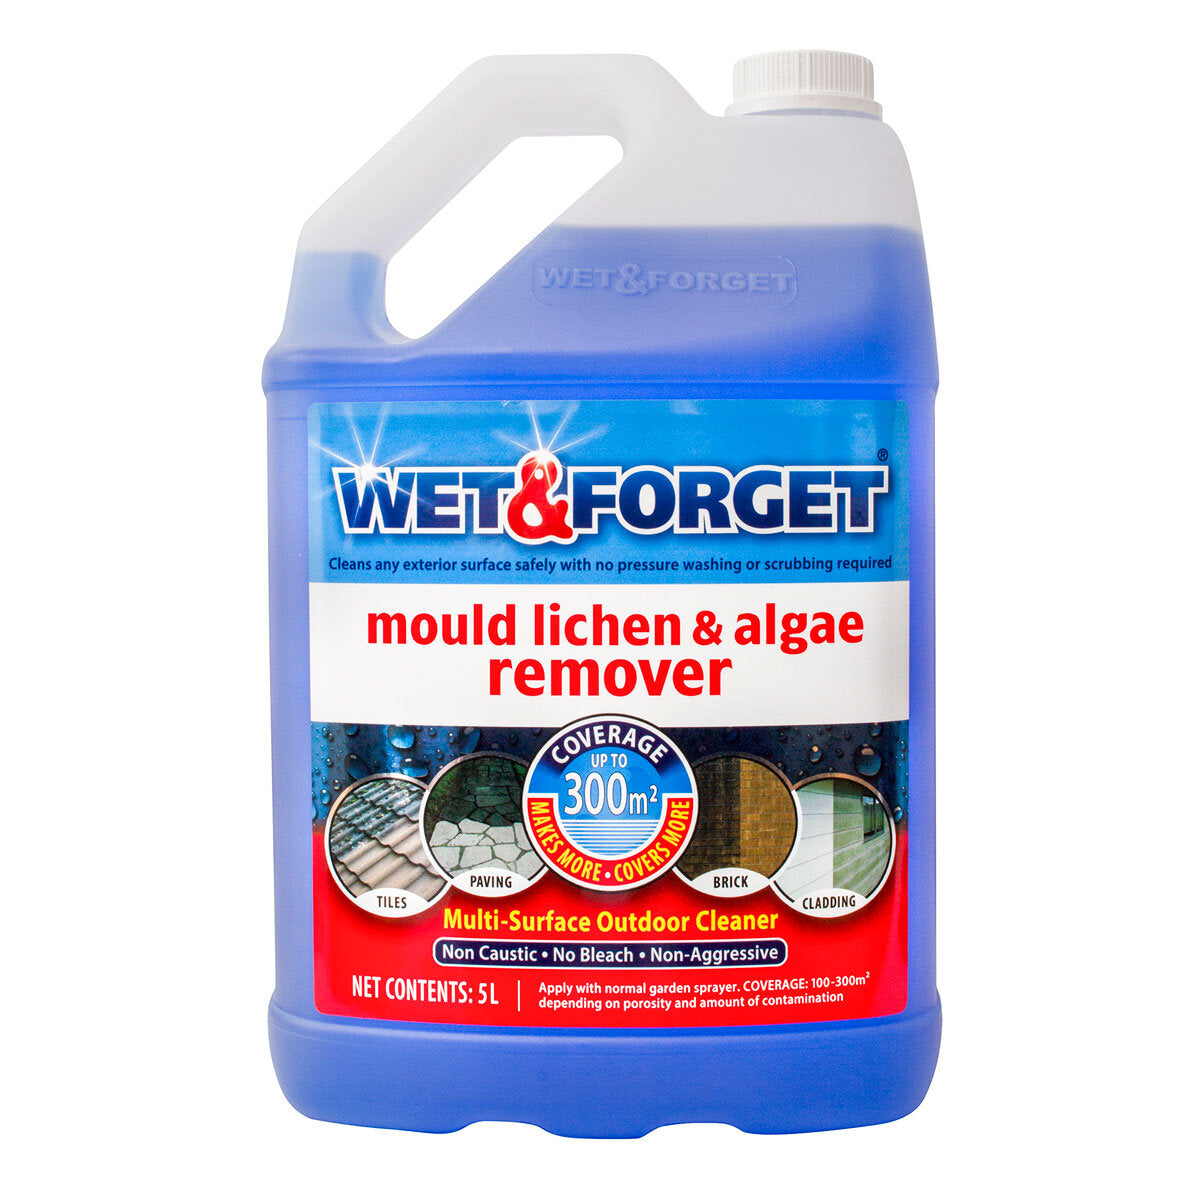 Mould, Lichen And Algae Remover